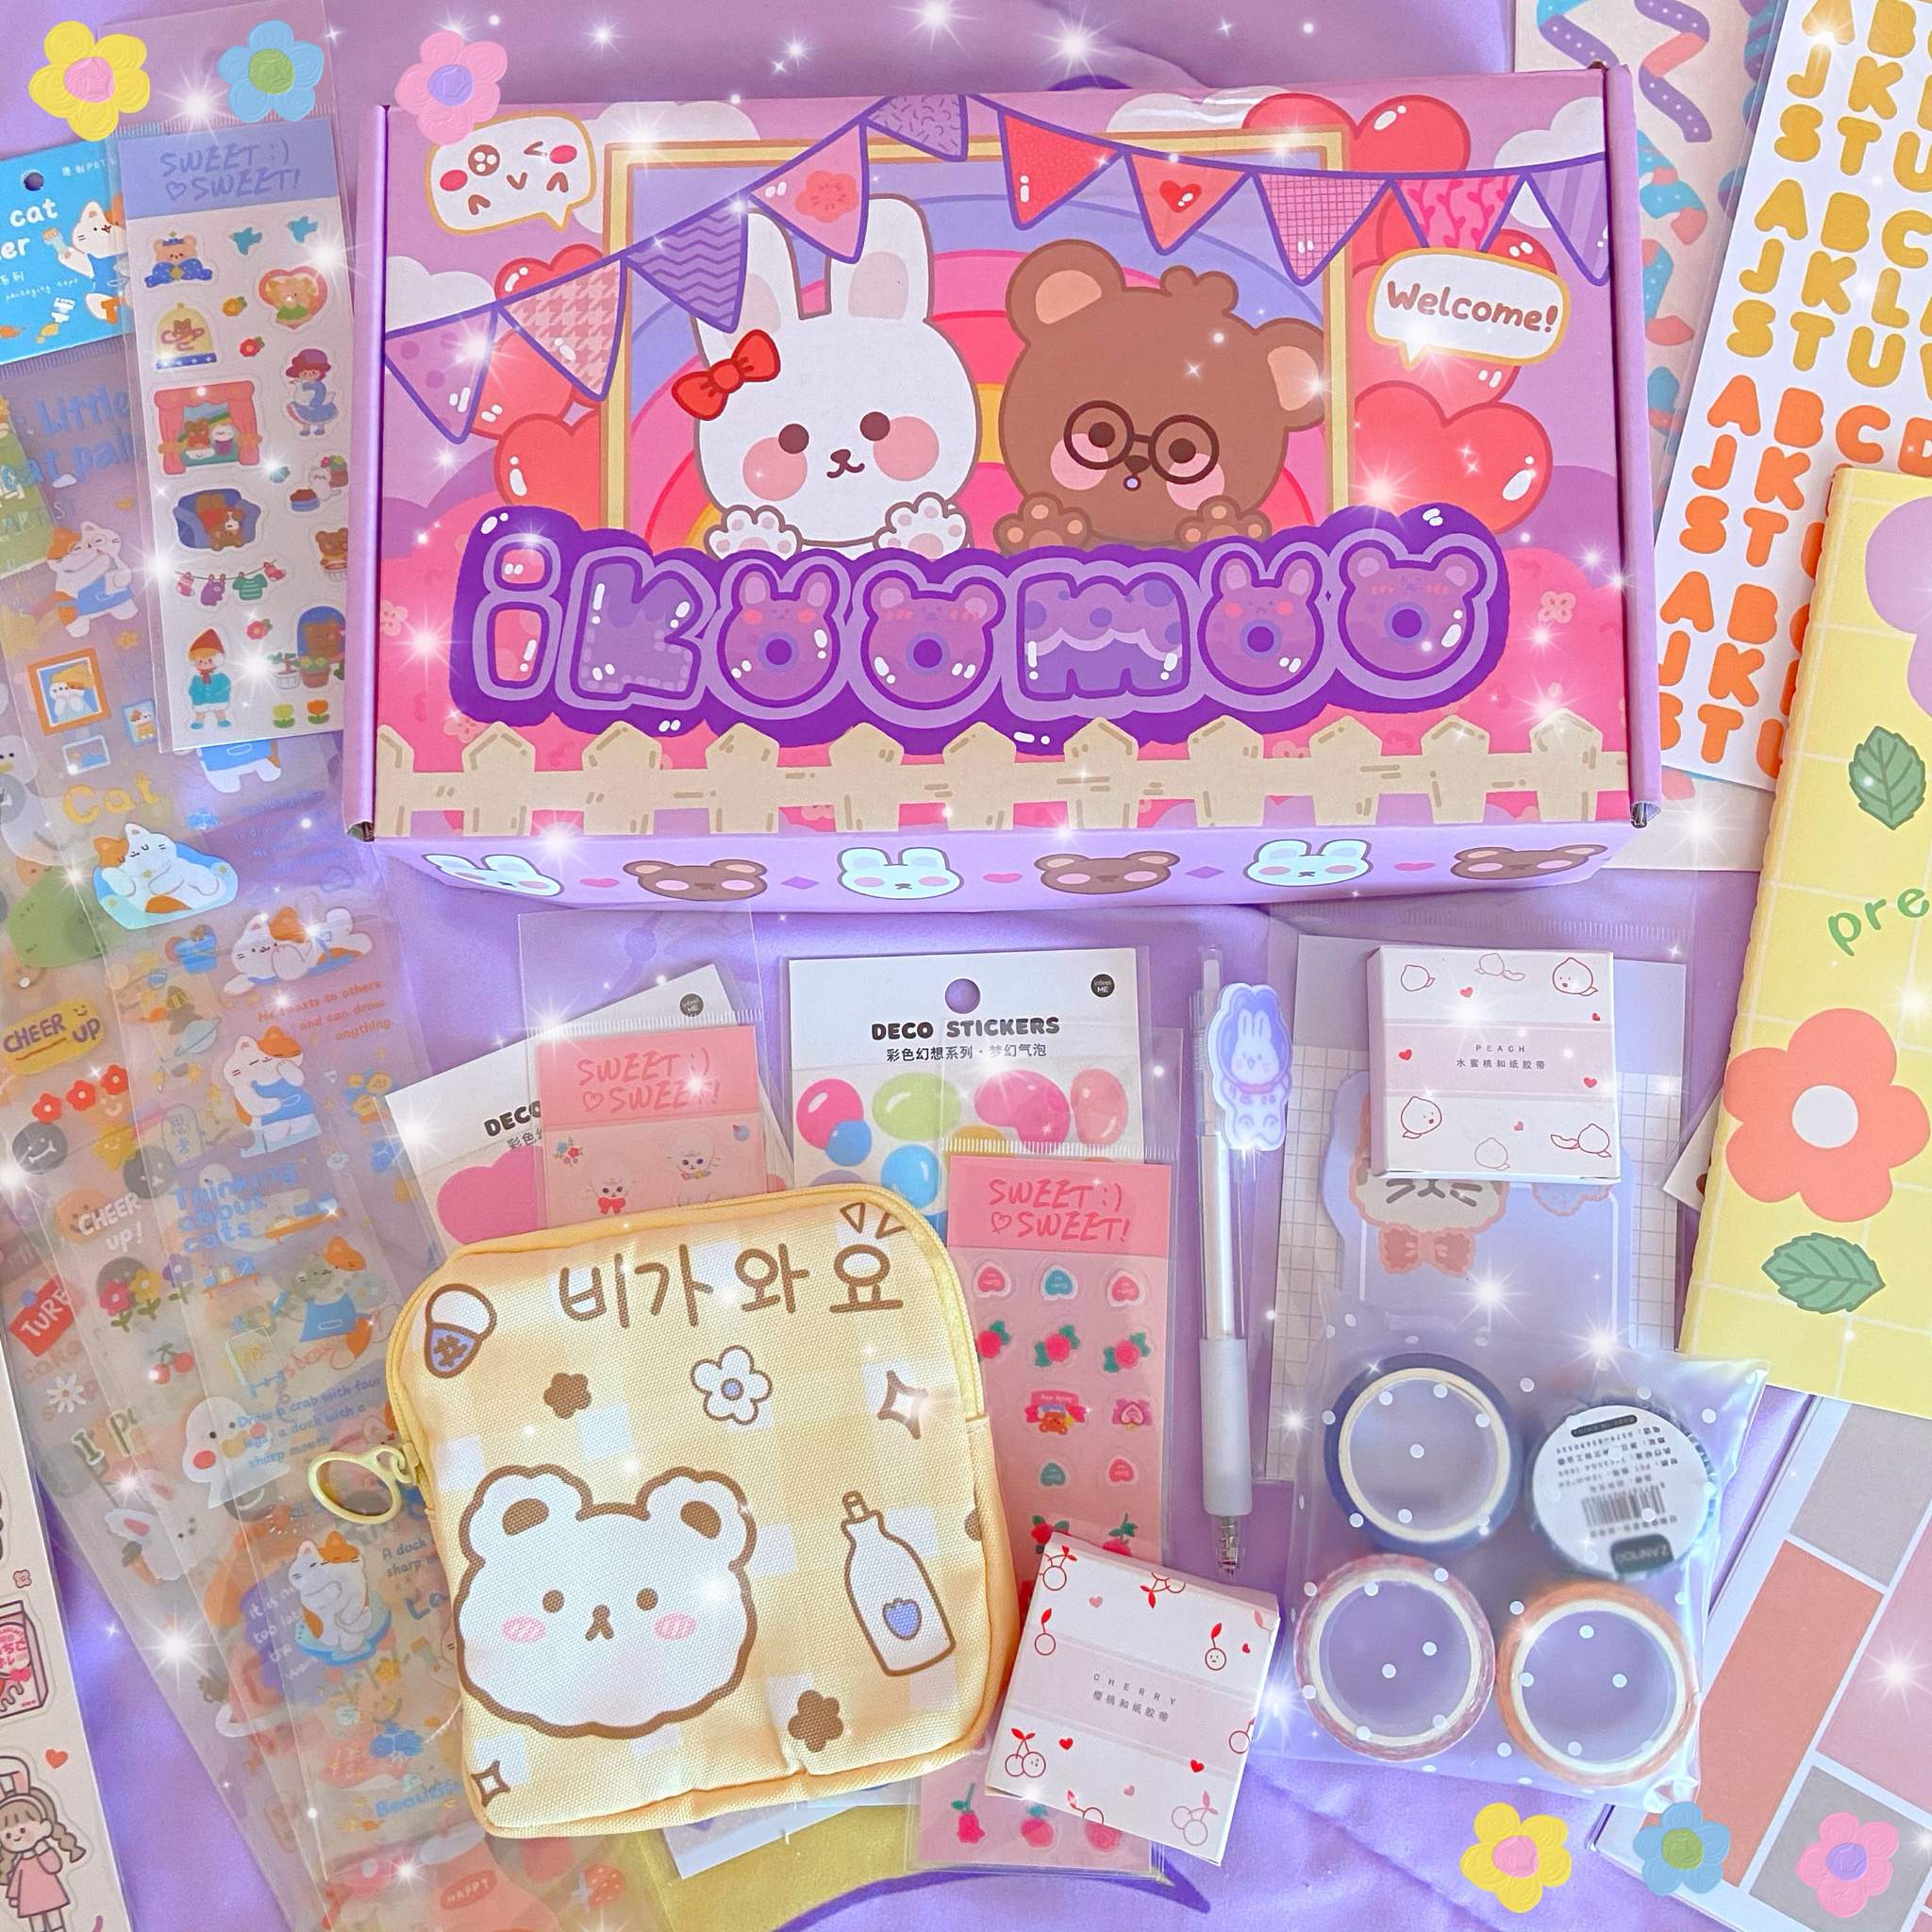 Ikoomoo mystery Kawaii box unboxing! | kawaii + aesthetic haul ✿ | Amino Amino